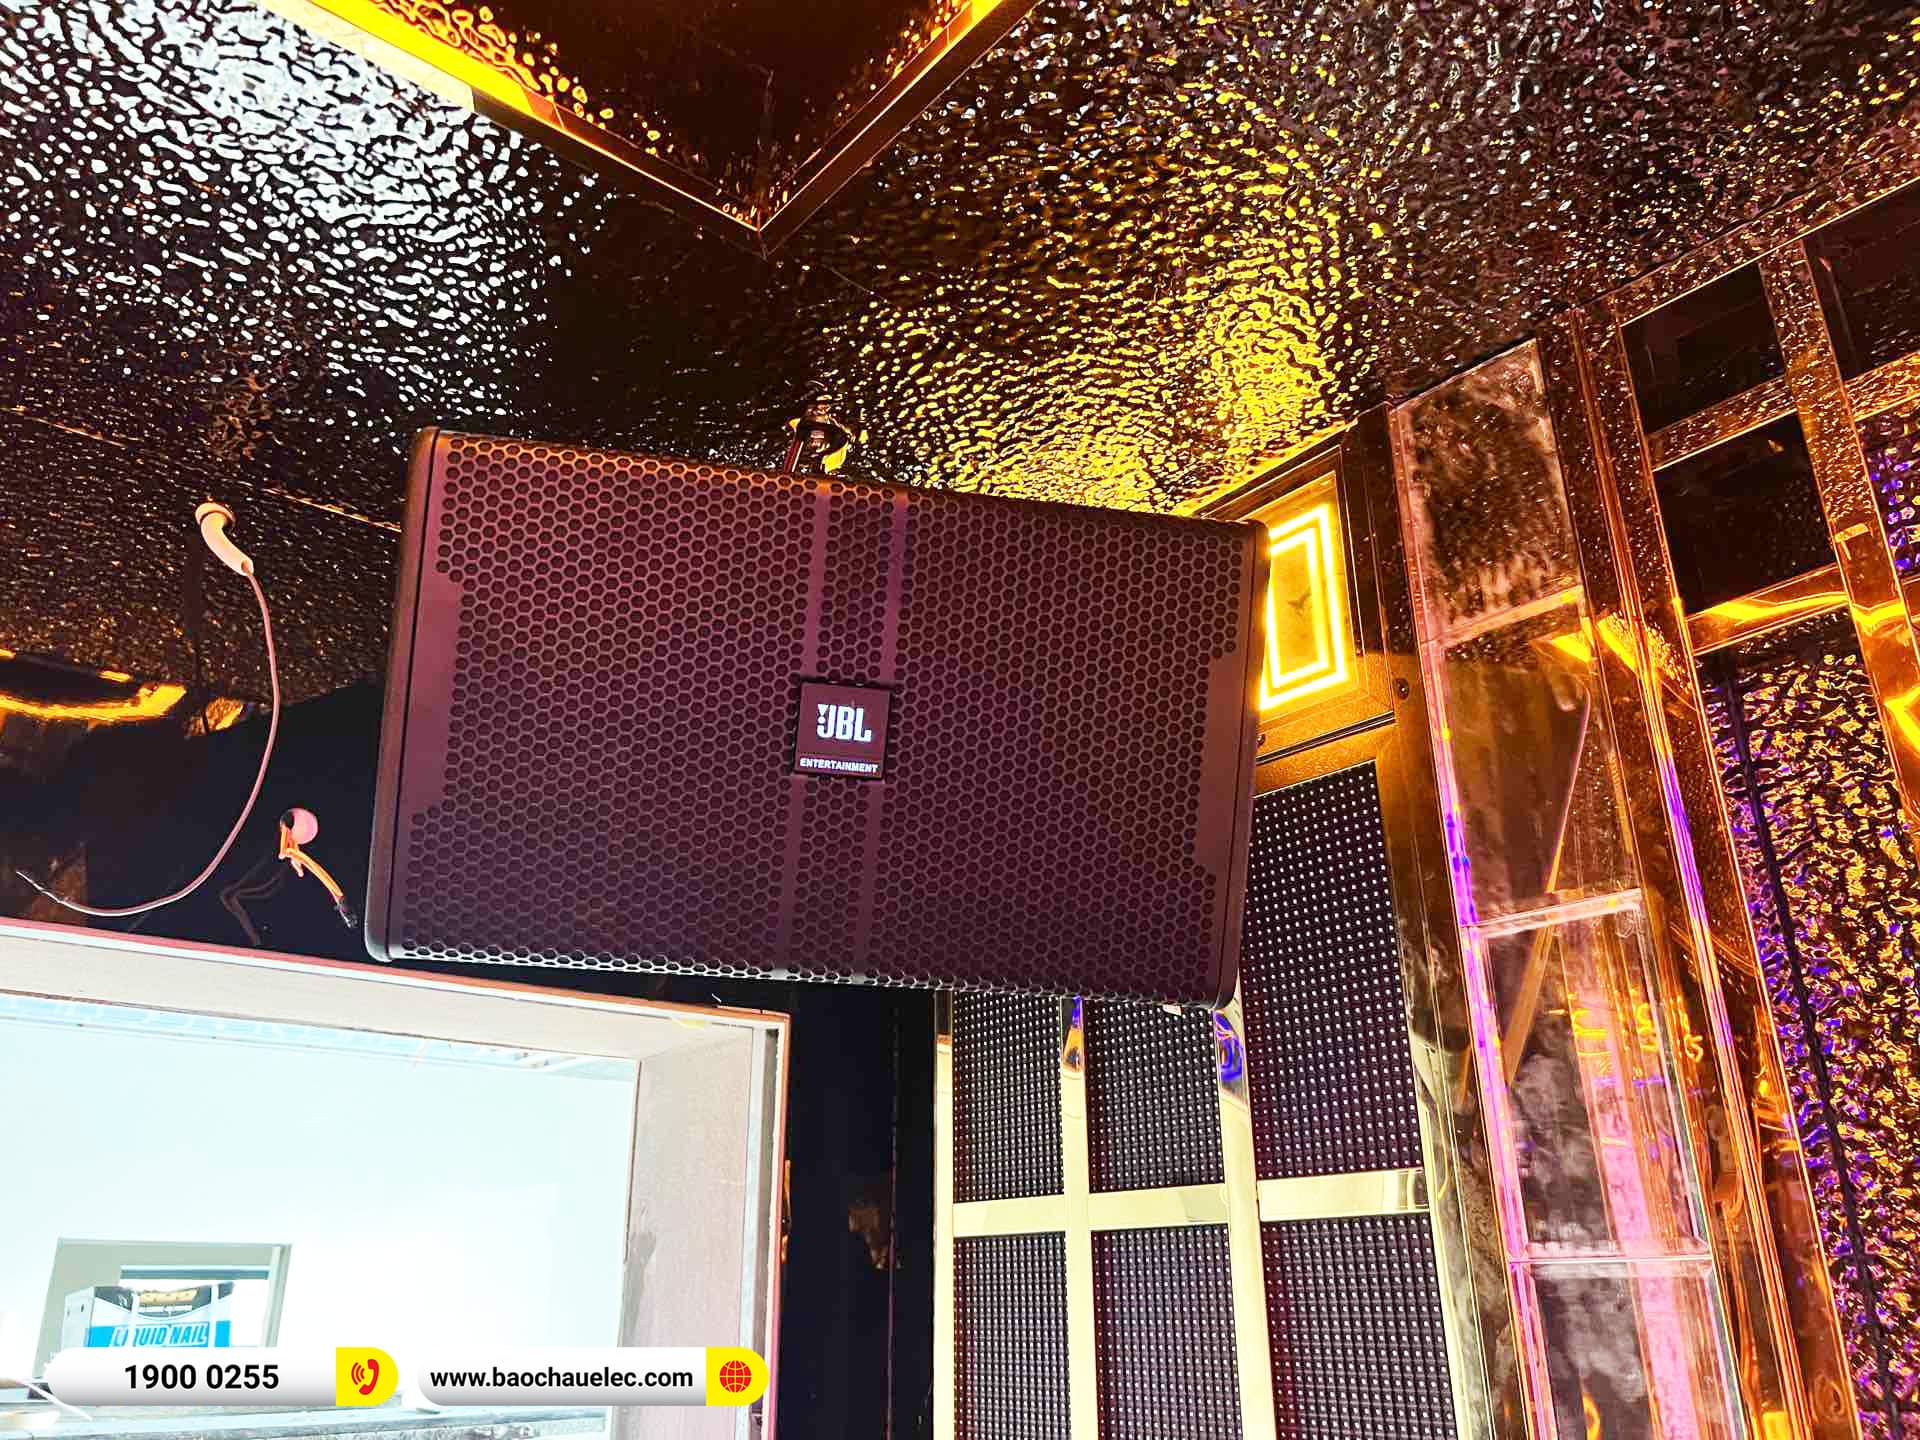 Lắp đặt 4 phòng hát karaoke kinh doanh anh Long tại Quảng Bình (BMB 1212SE, JBL KP4012, KX180A, CA-J804,…) 